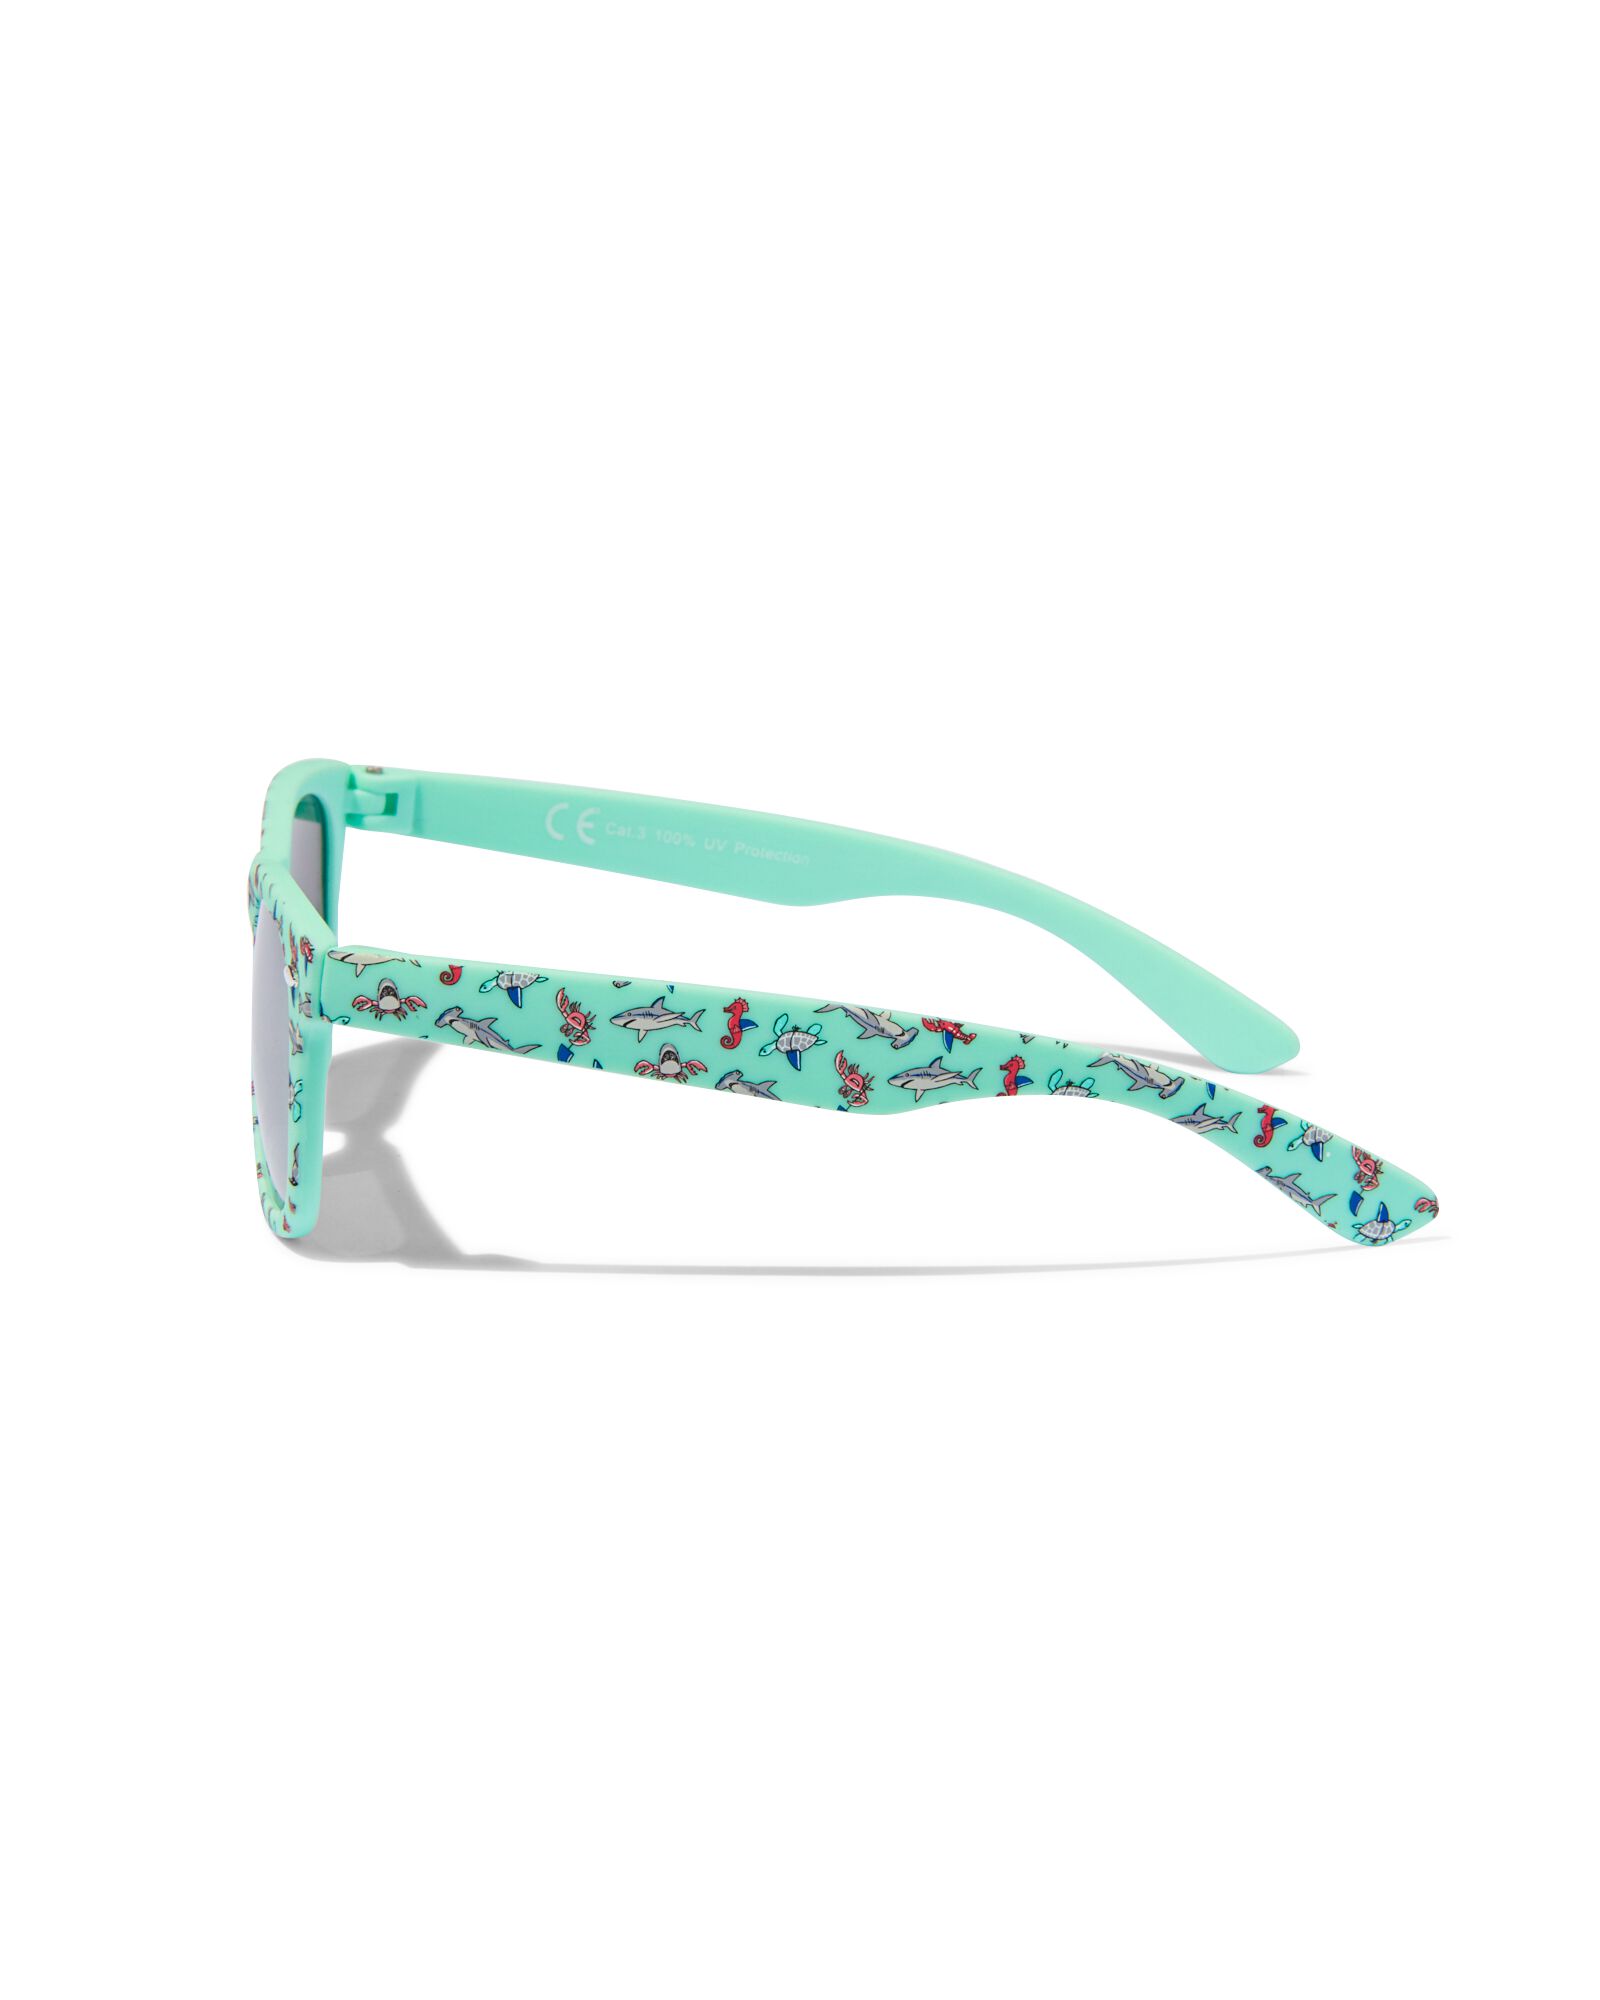 lunettes de natation pour enfants - vertes - HEMA